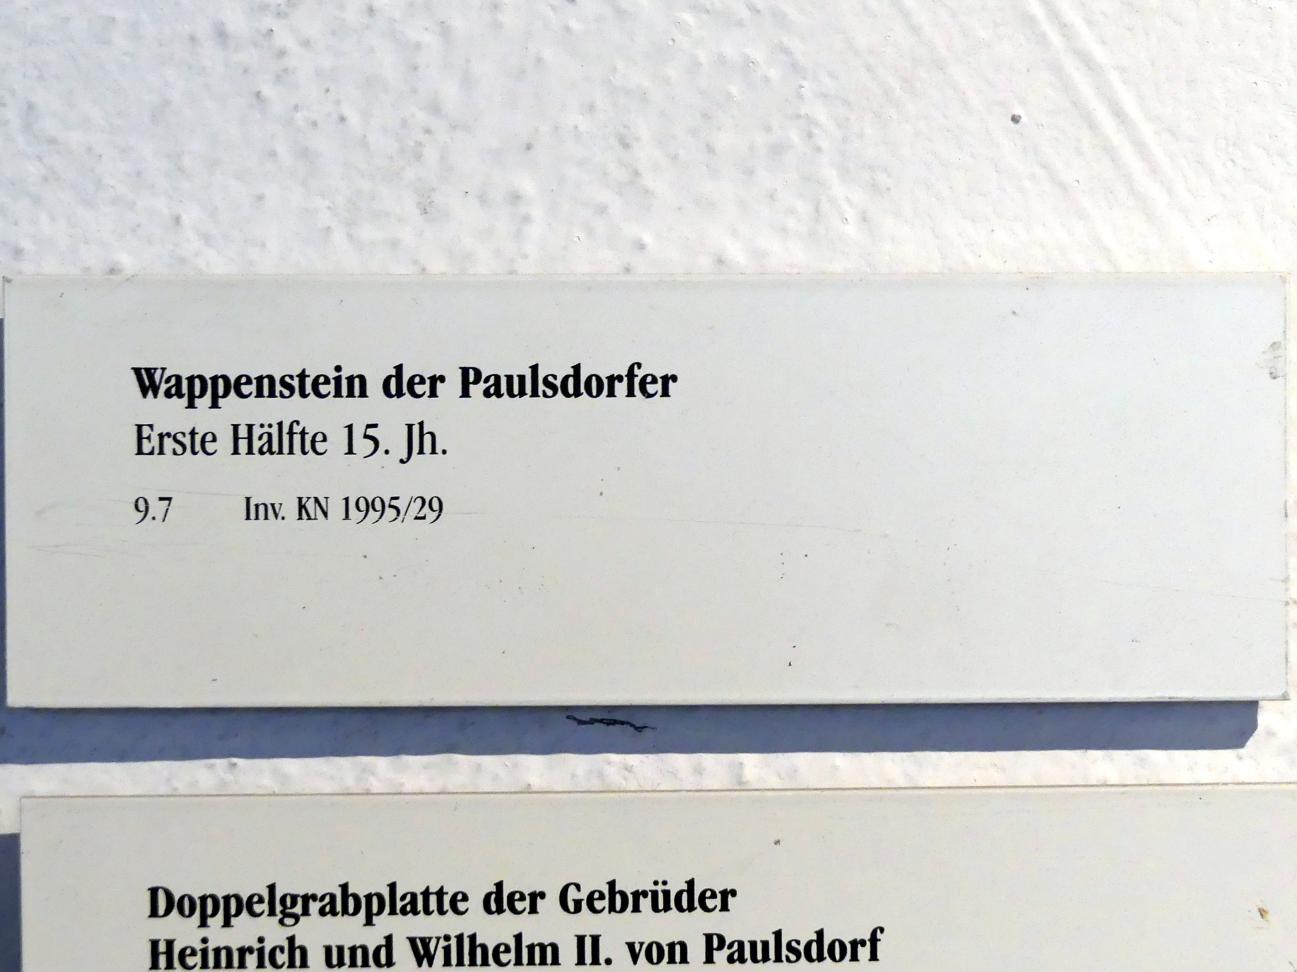 Wappenstein der Paulsdorfer, Regensburg, Historisches Museum, 1. Hälfte 15. Jhd., Bild 2/2